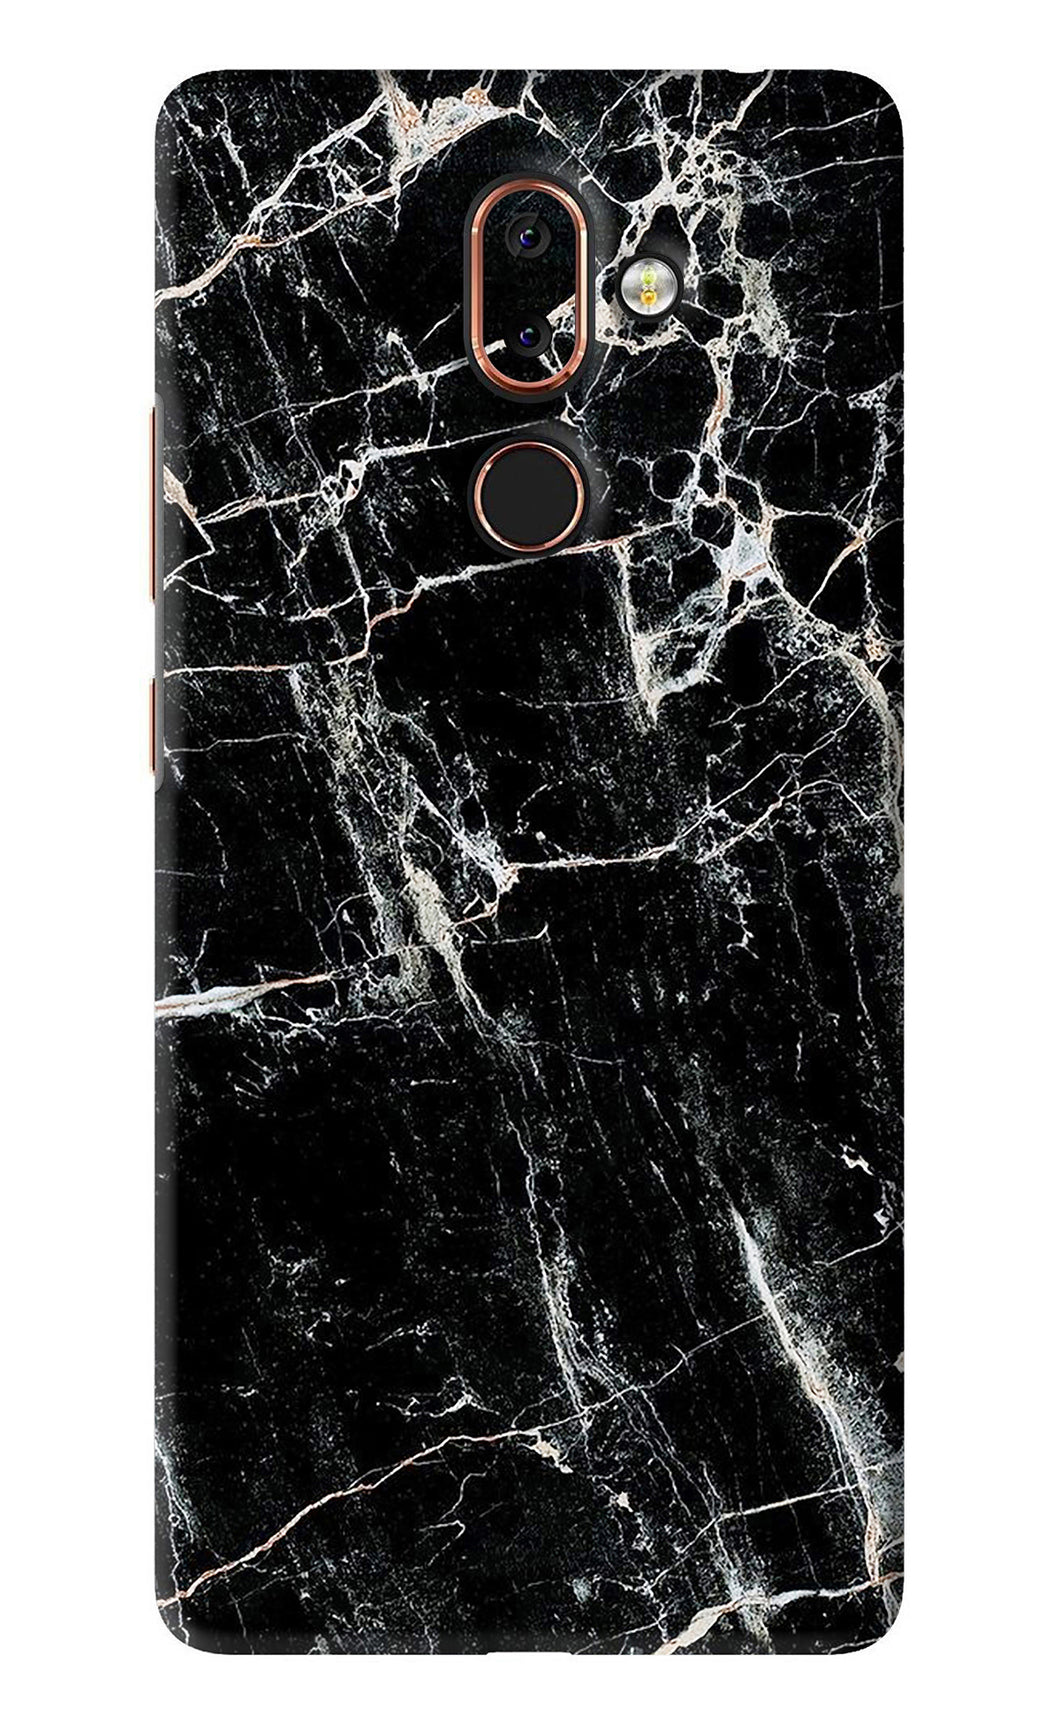 Black Marble Texture 1 Nokia 7 Plus Back Skin Wrap